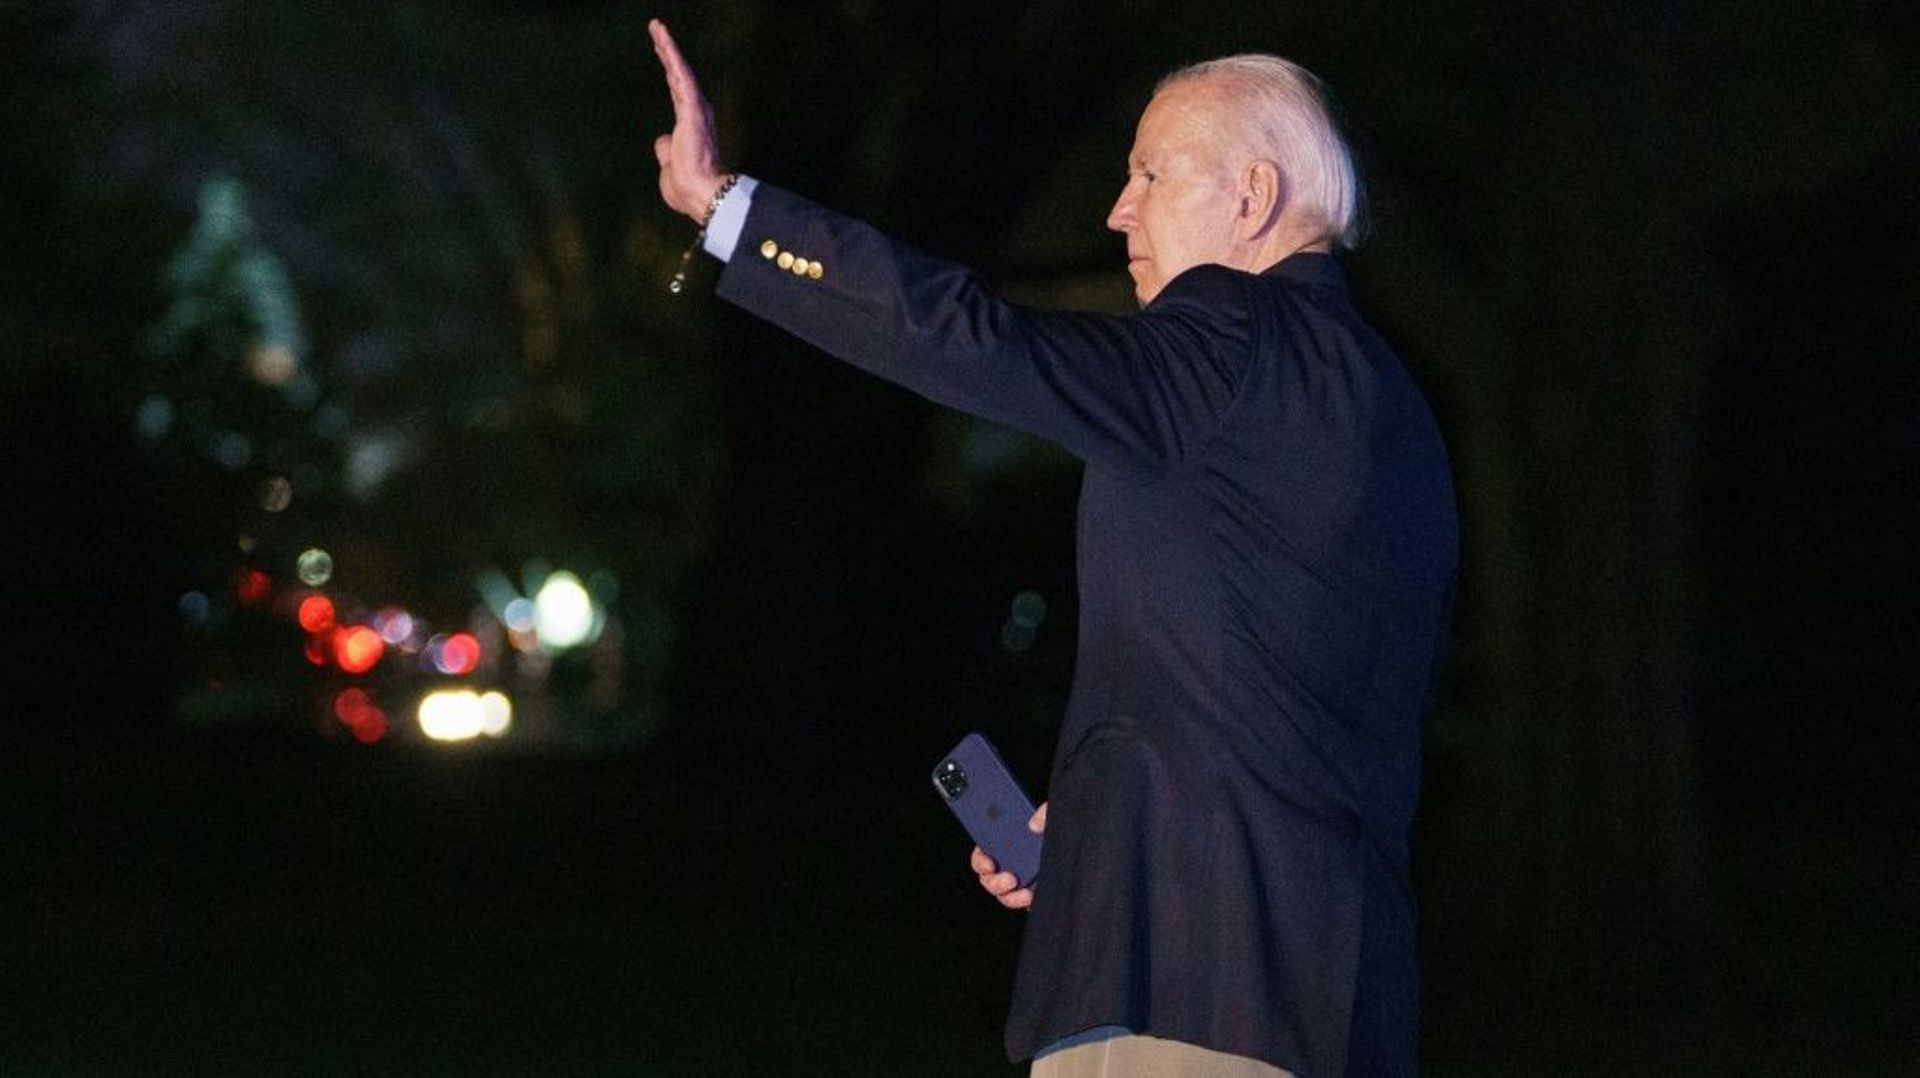 Le président américain Joe Biden salue avant d'embarquer dans l'hélicoptère sur la pelouse de la Maison Blanche à Washington, le 10 novembre 2022
